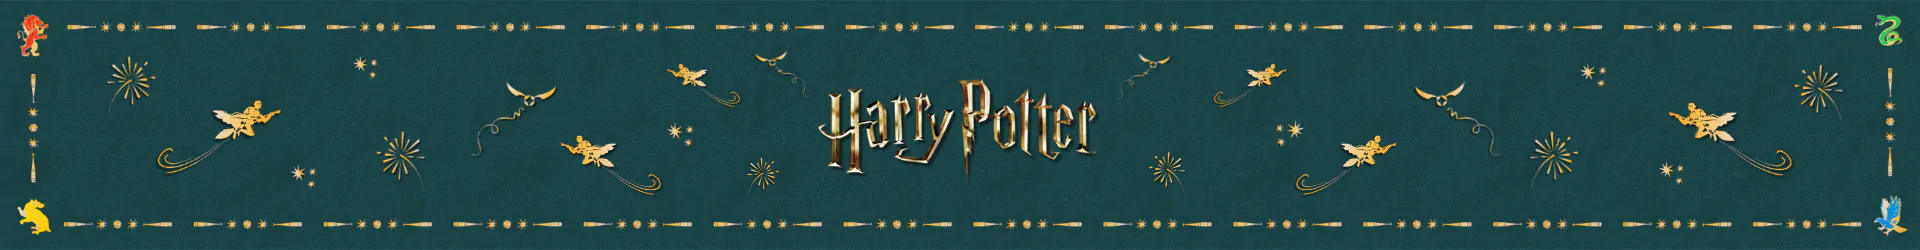 Harry Potter pillows banner